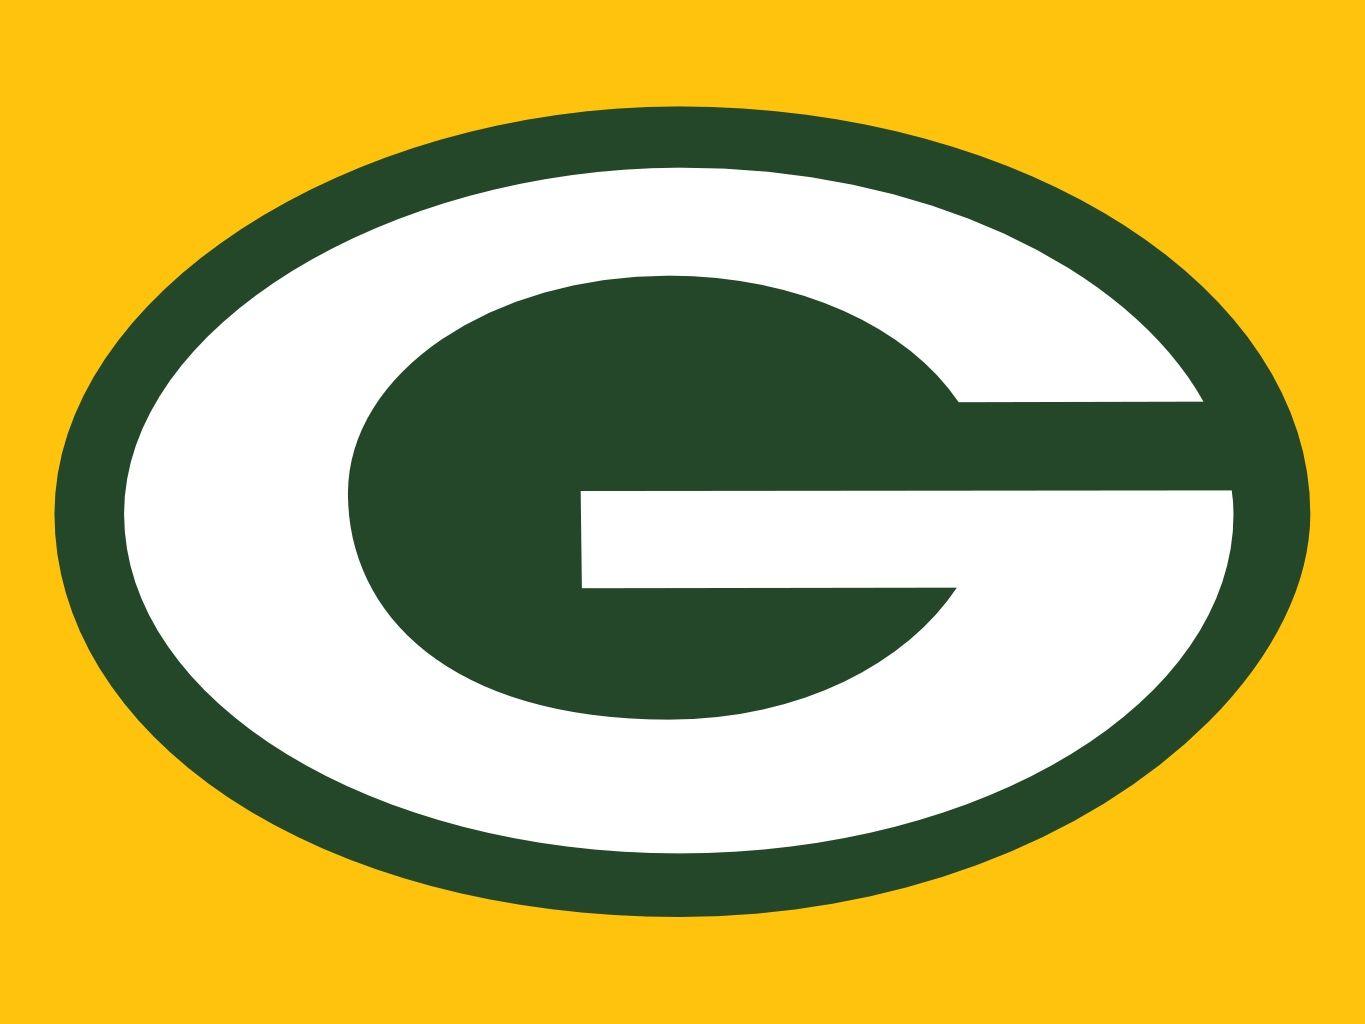 Green and Yellow Football Logo - Green Bay Packer Logo Clip Art. taylor. Green Bay